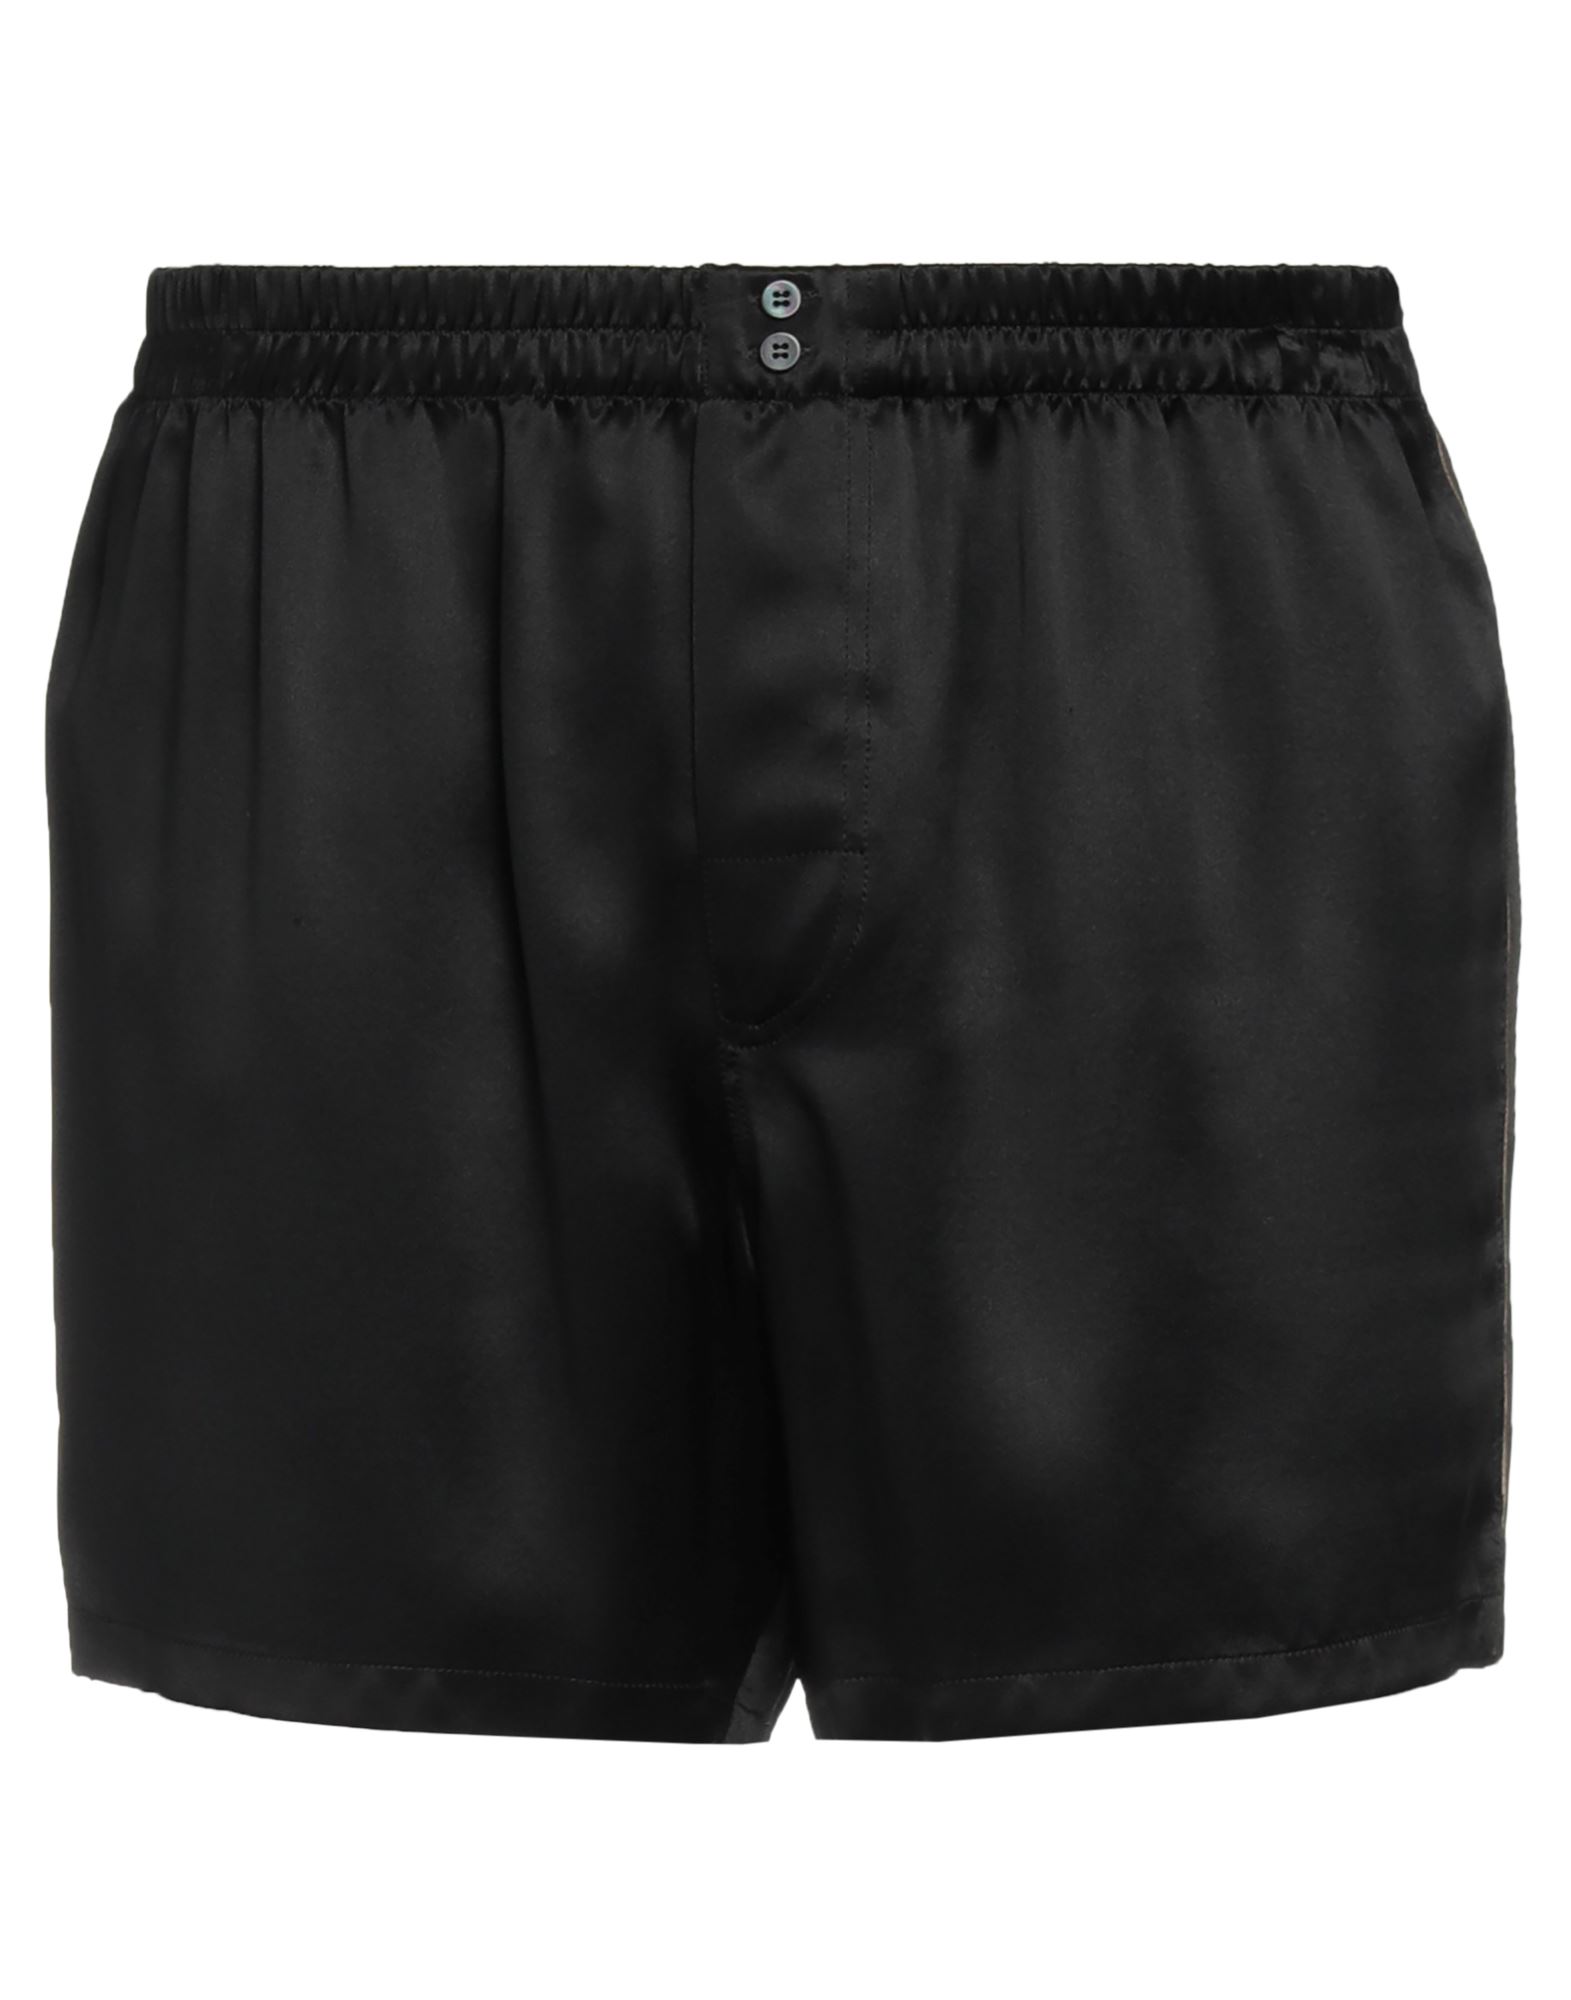 Dolce & Gabbana Man Shorts & Bermuda Shorts Black Size 36 Silk